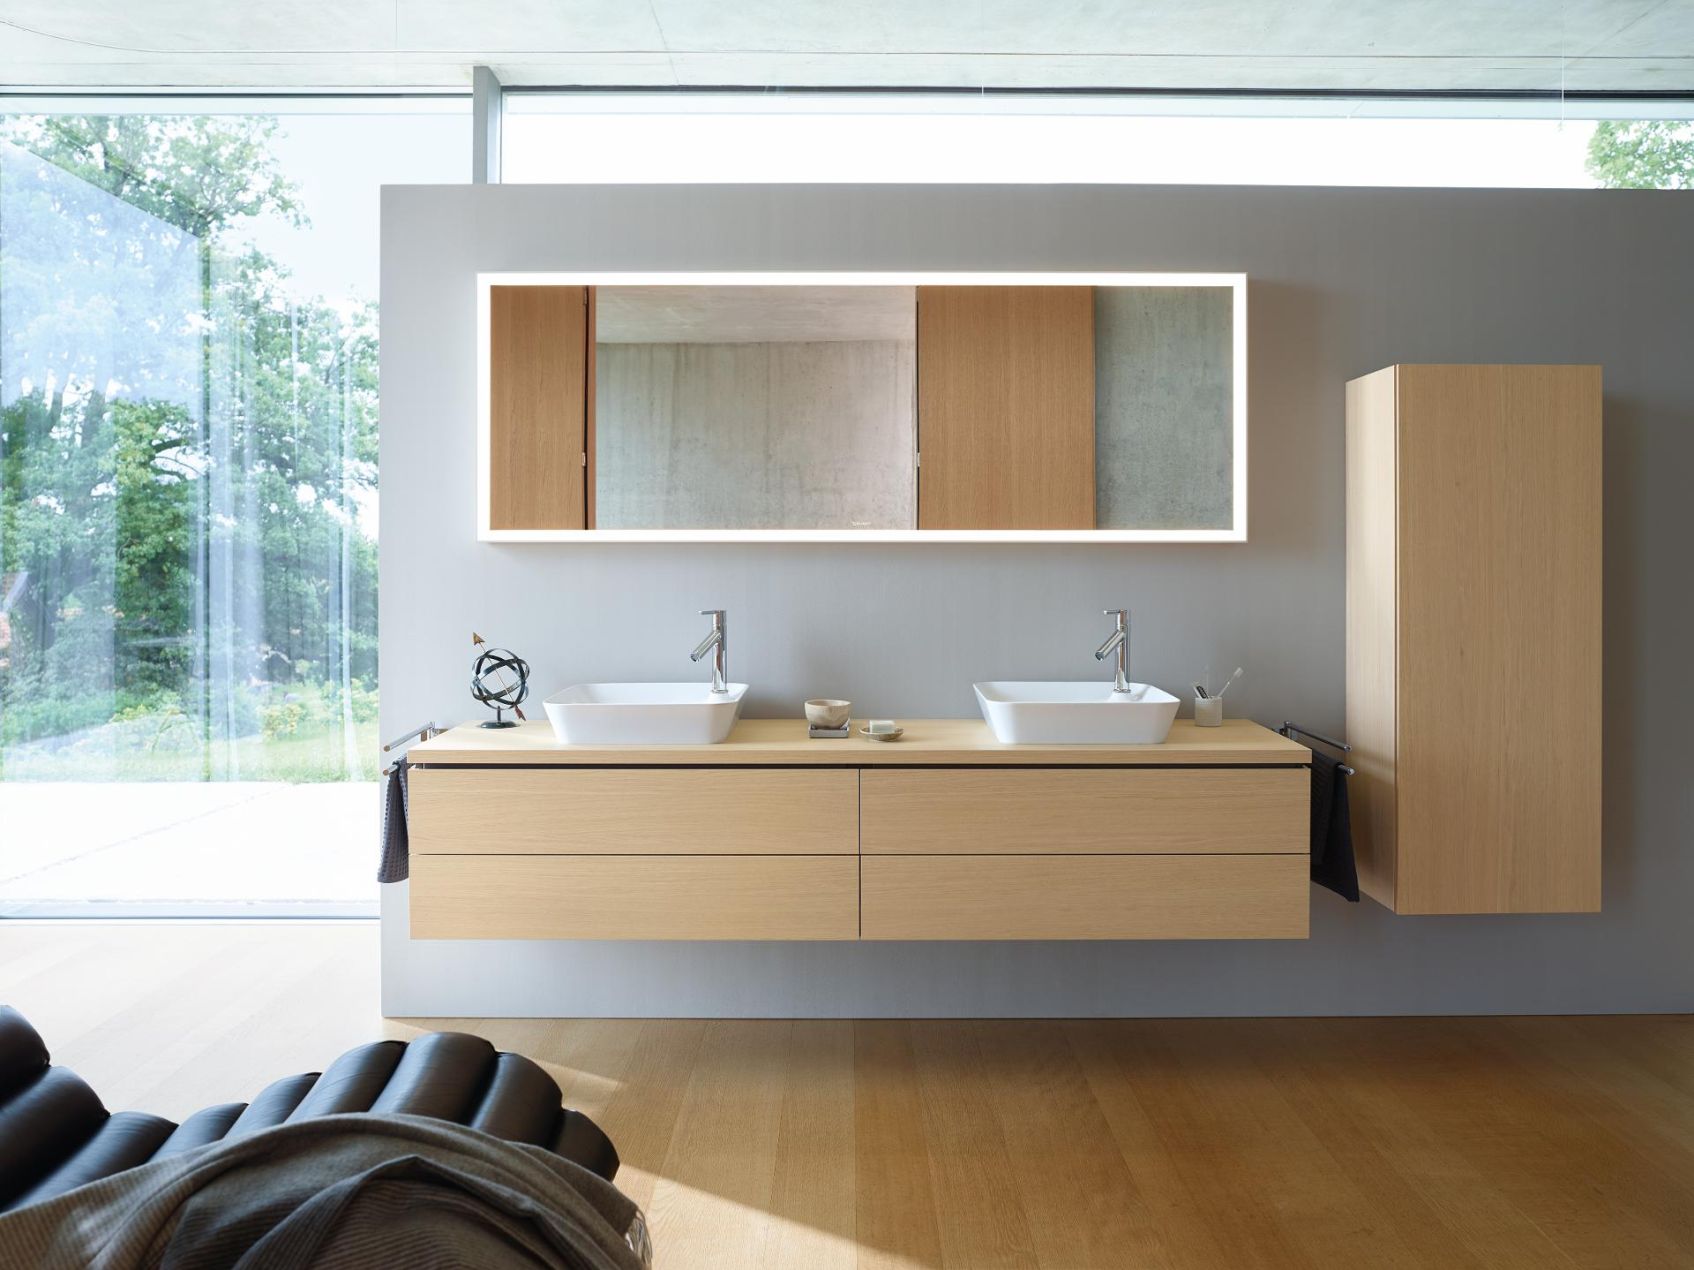 Łazienka w drewnie. Łazienka biało-drewniana, szara łazienka z drewnem czy łazienka drewno beton? Aranżacje, inspiracje!